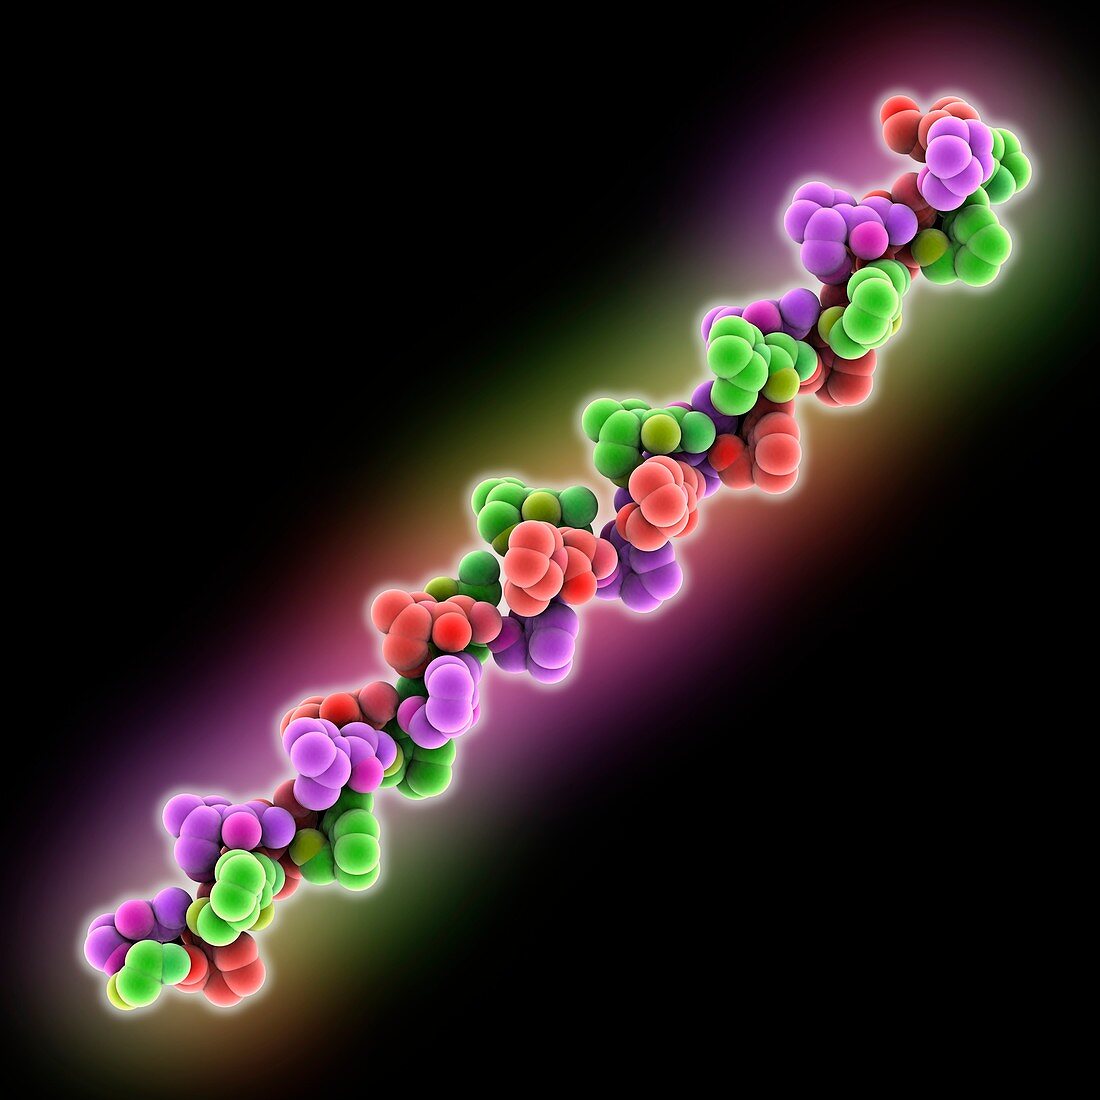 Collagen-like peptide molecule